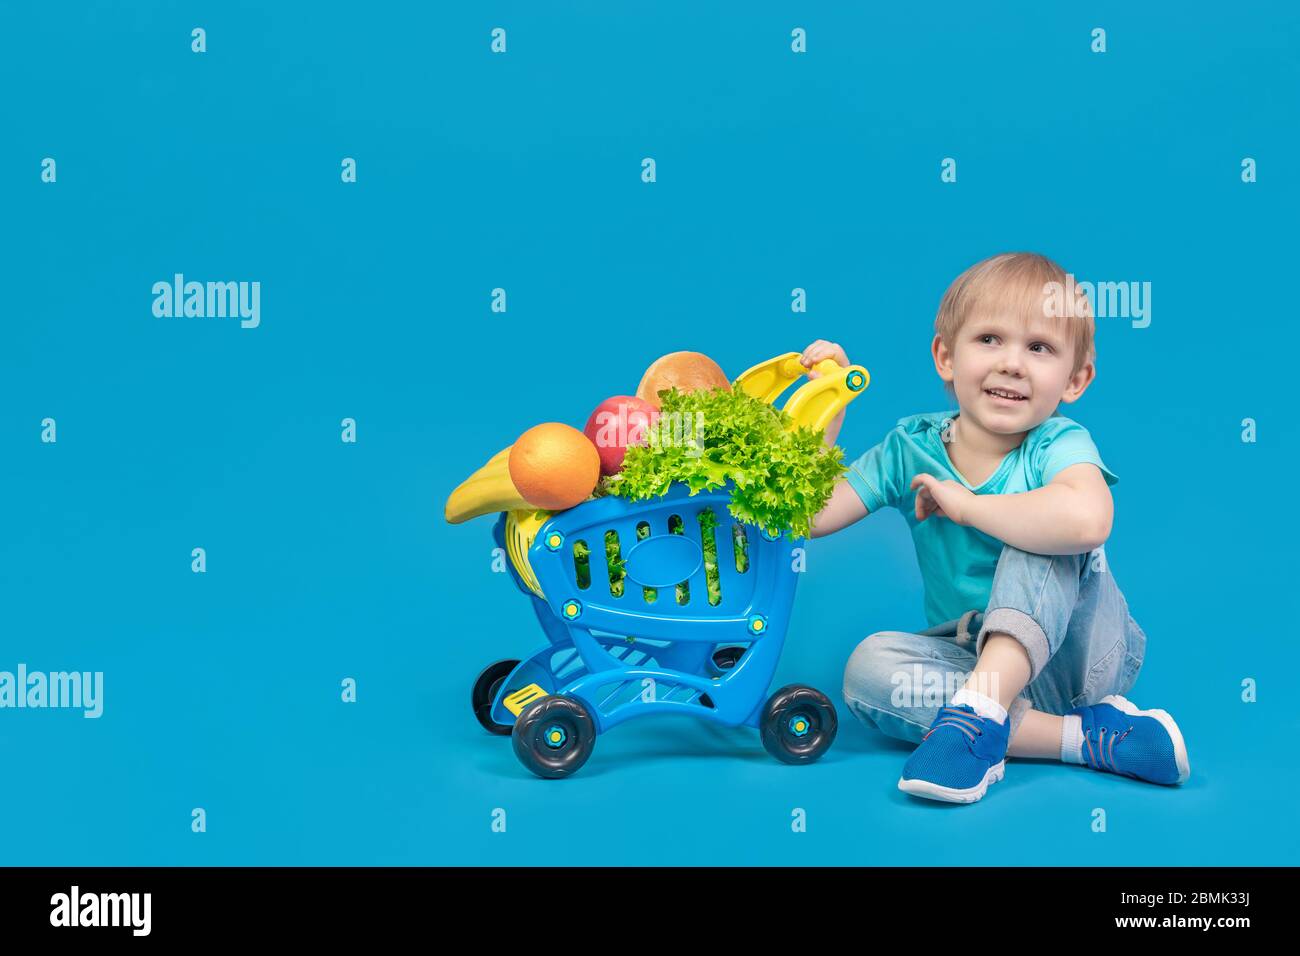 Un enfant d'apparence européenne, un garçon blond, est assis sur le sol près d'un chariot d'un supermarché rempli d'épicerie, de fruits, de pain A. Banque D'Images